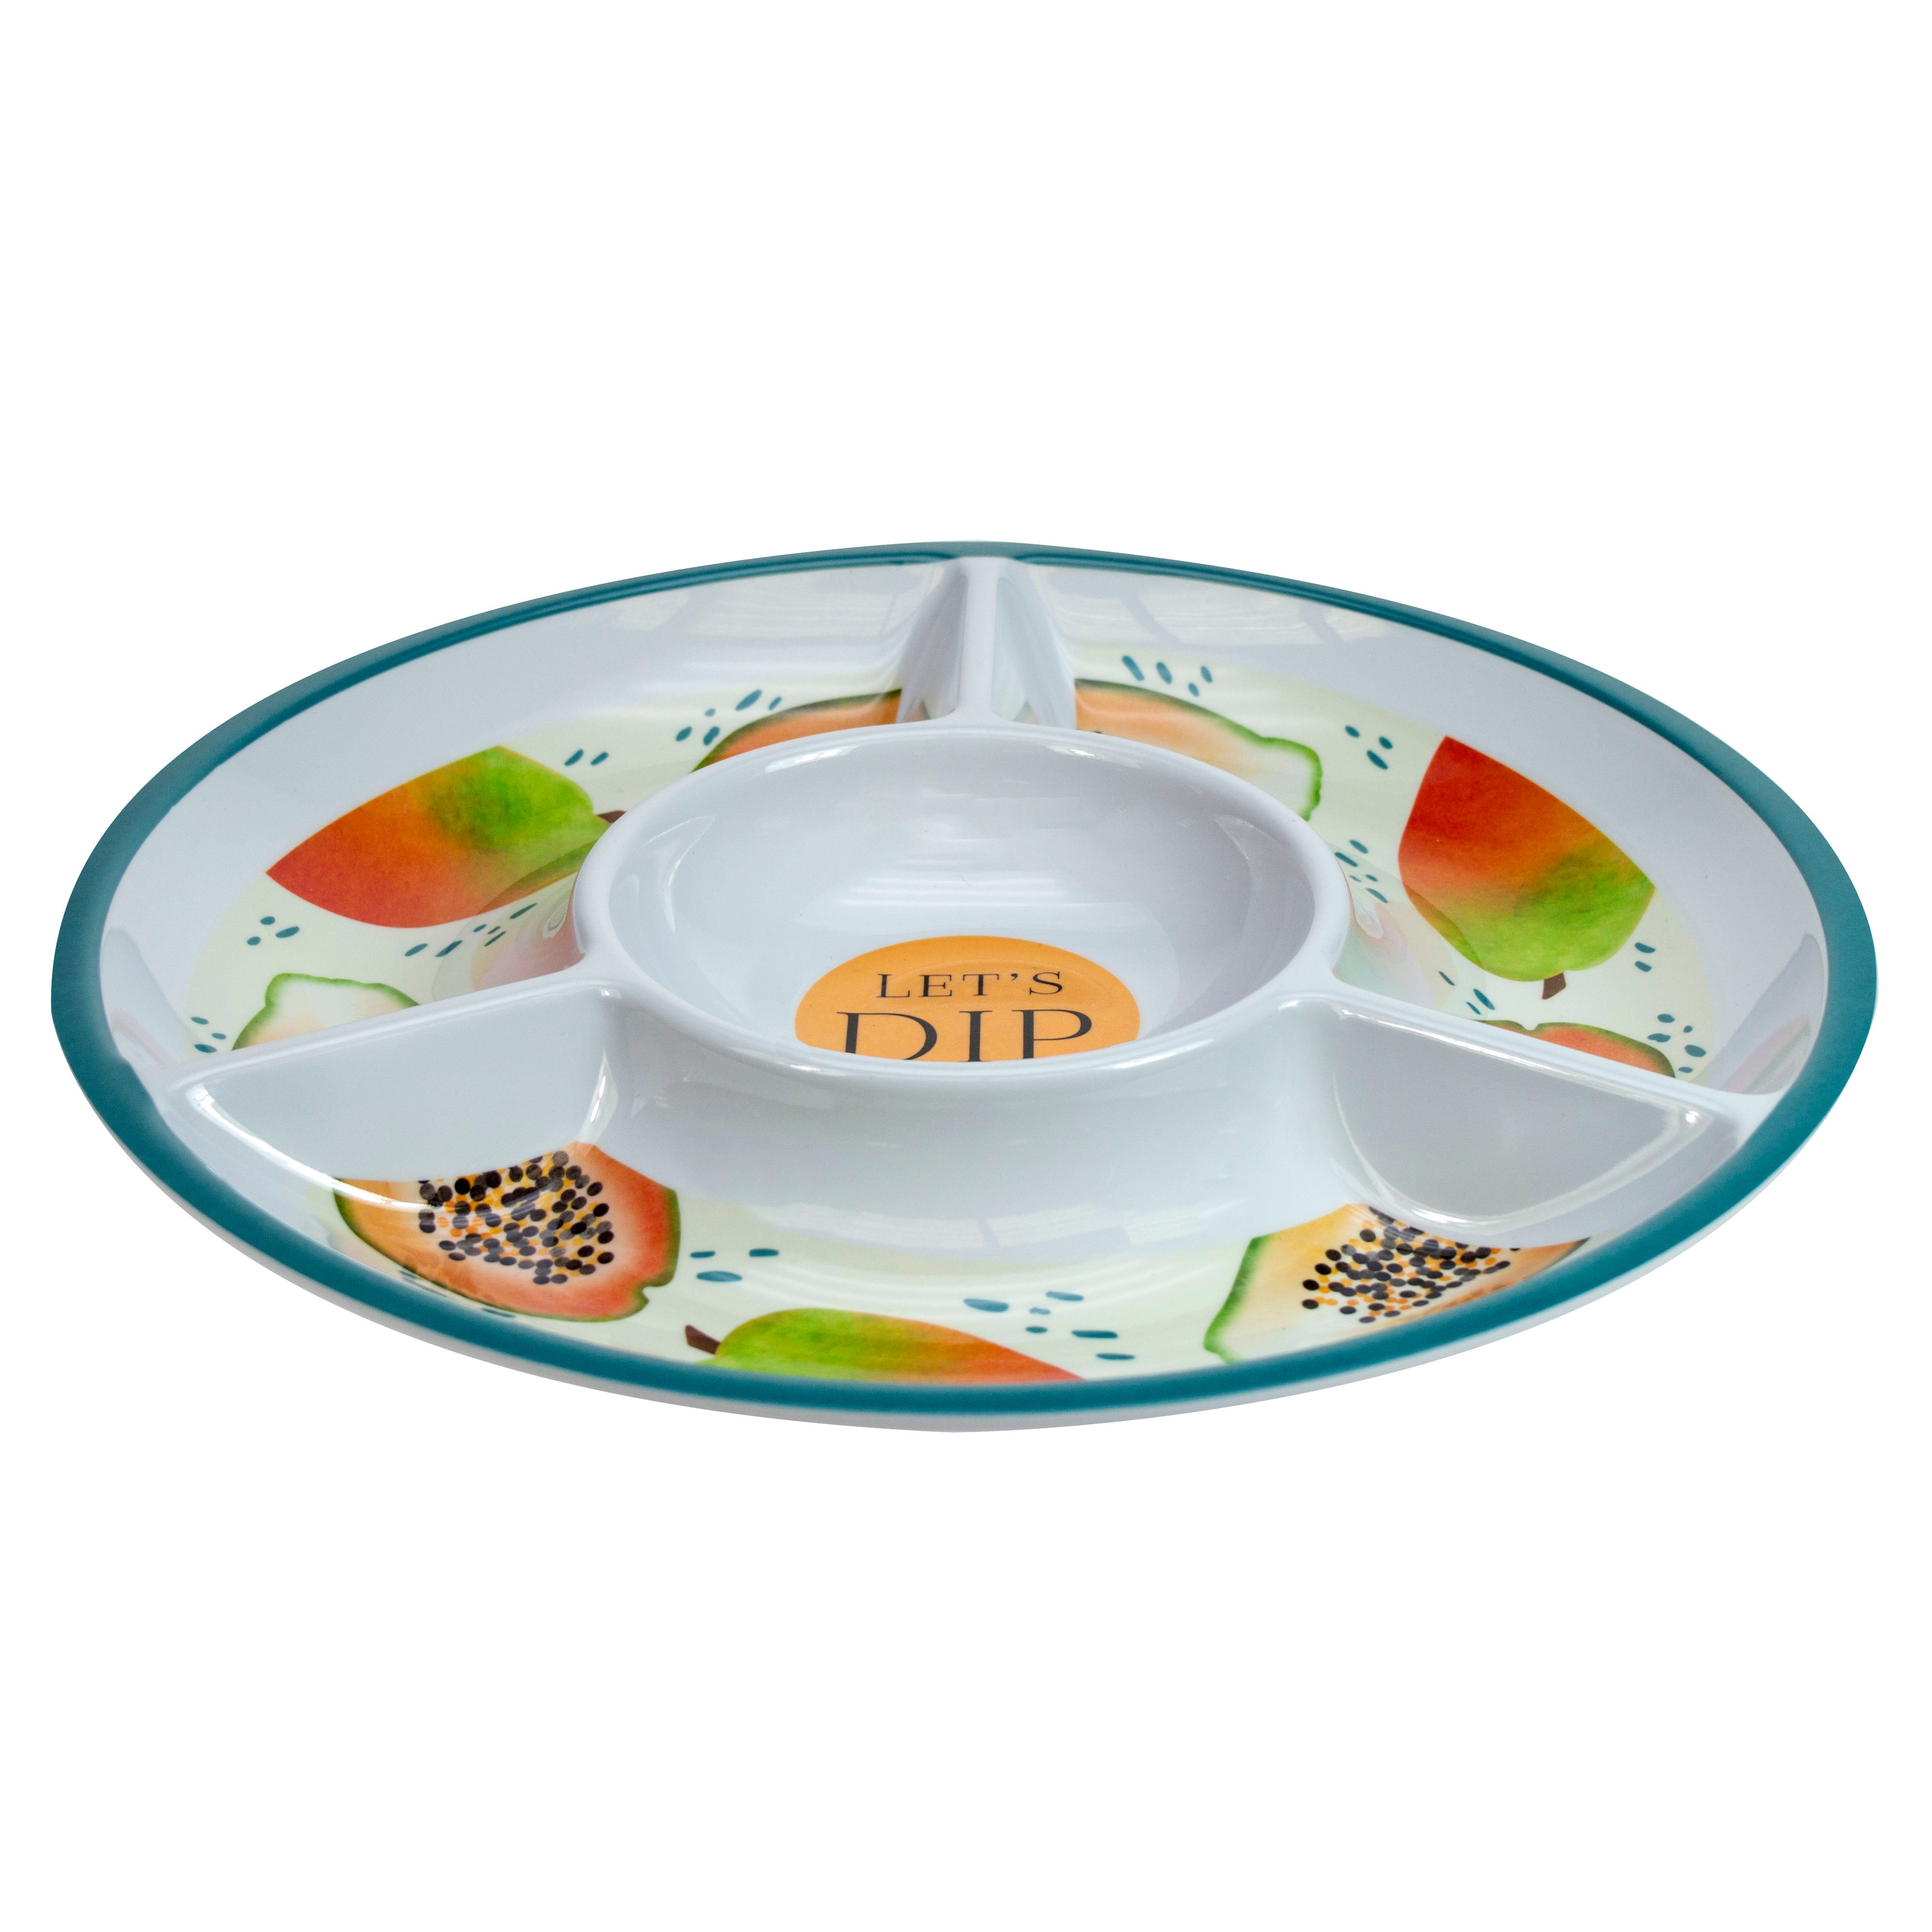 The English Tableware Company Papaya Bliss Large Serving Dip Dish